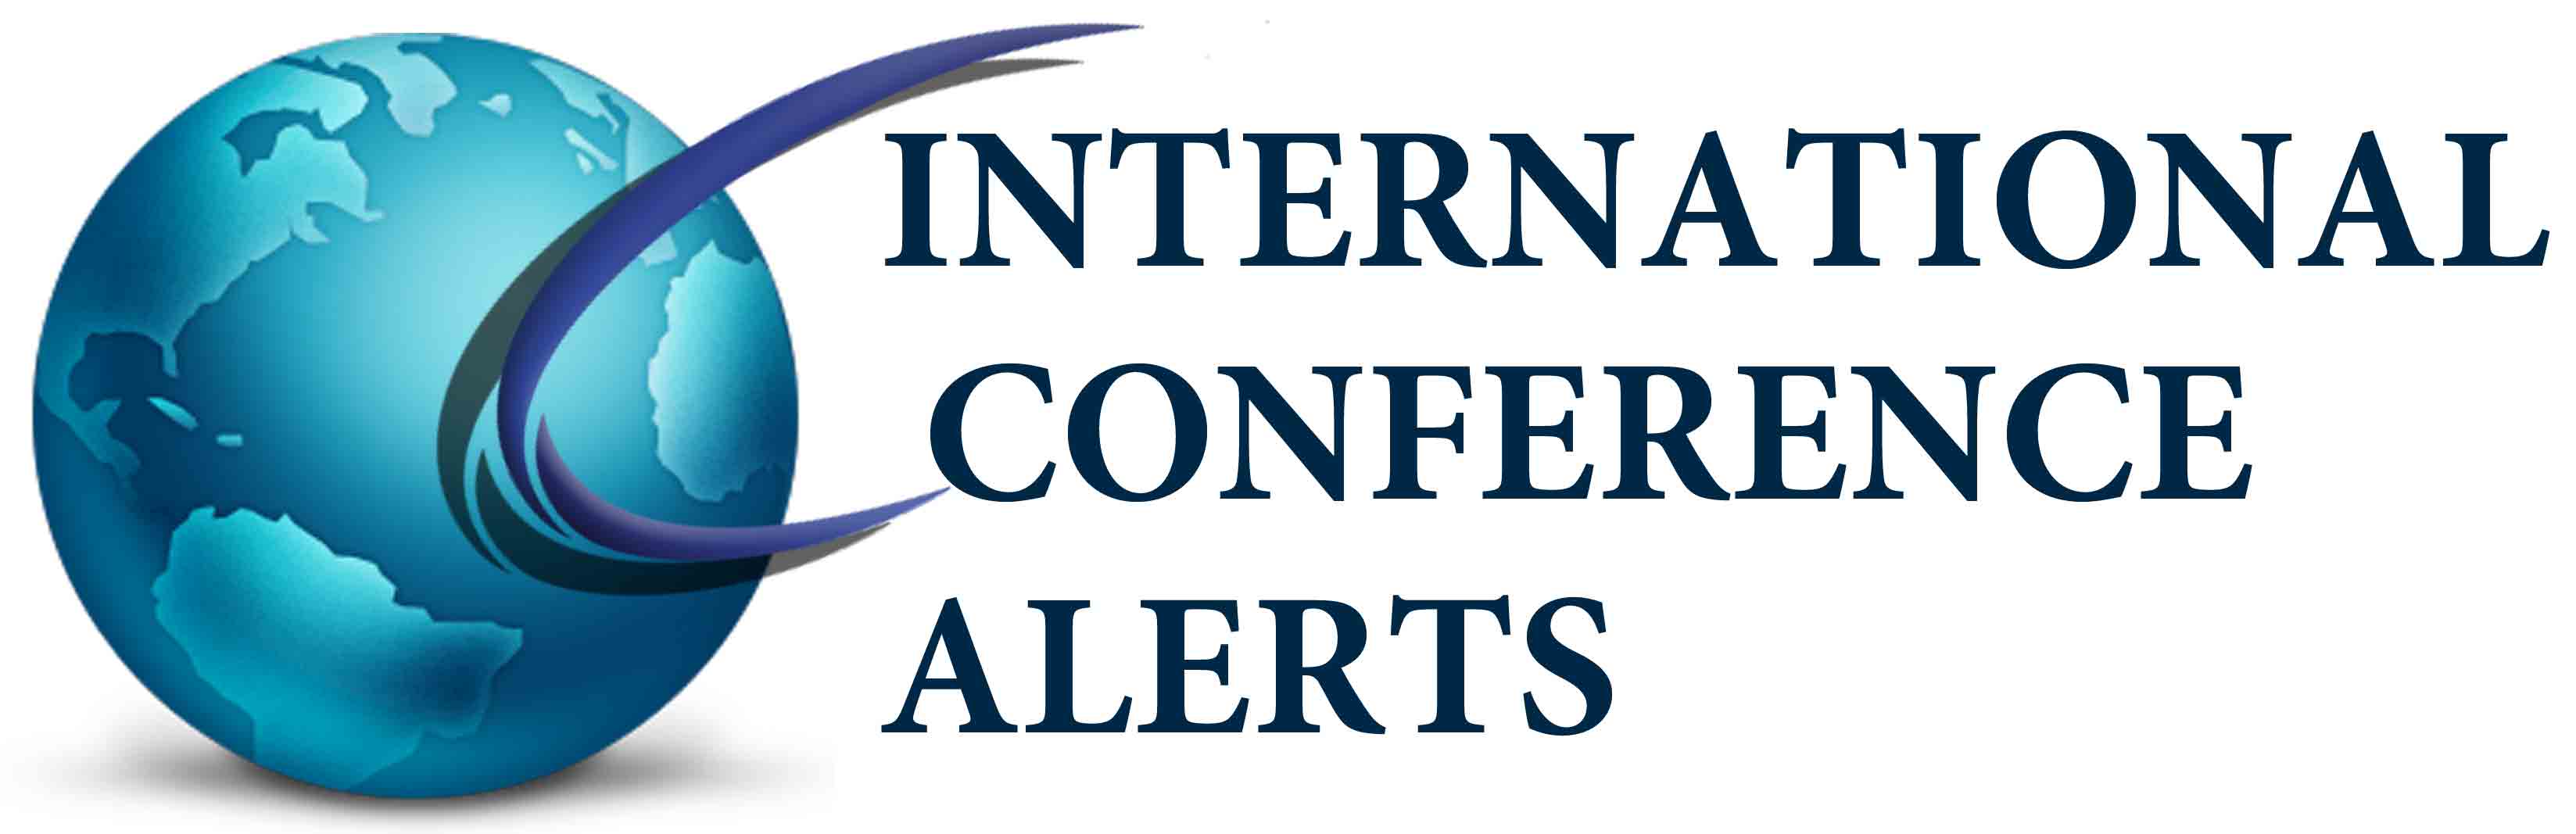 international-conference-alerts-logo